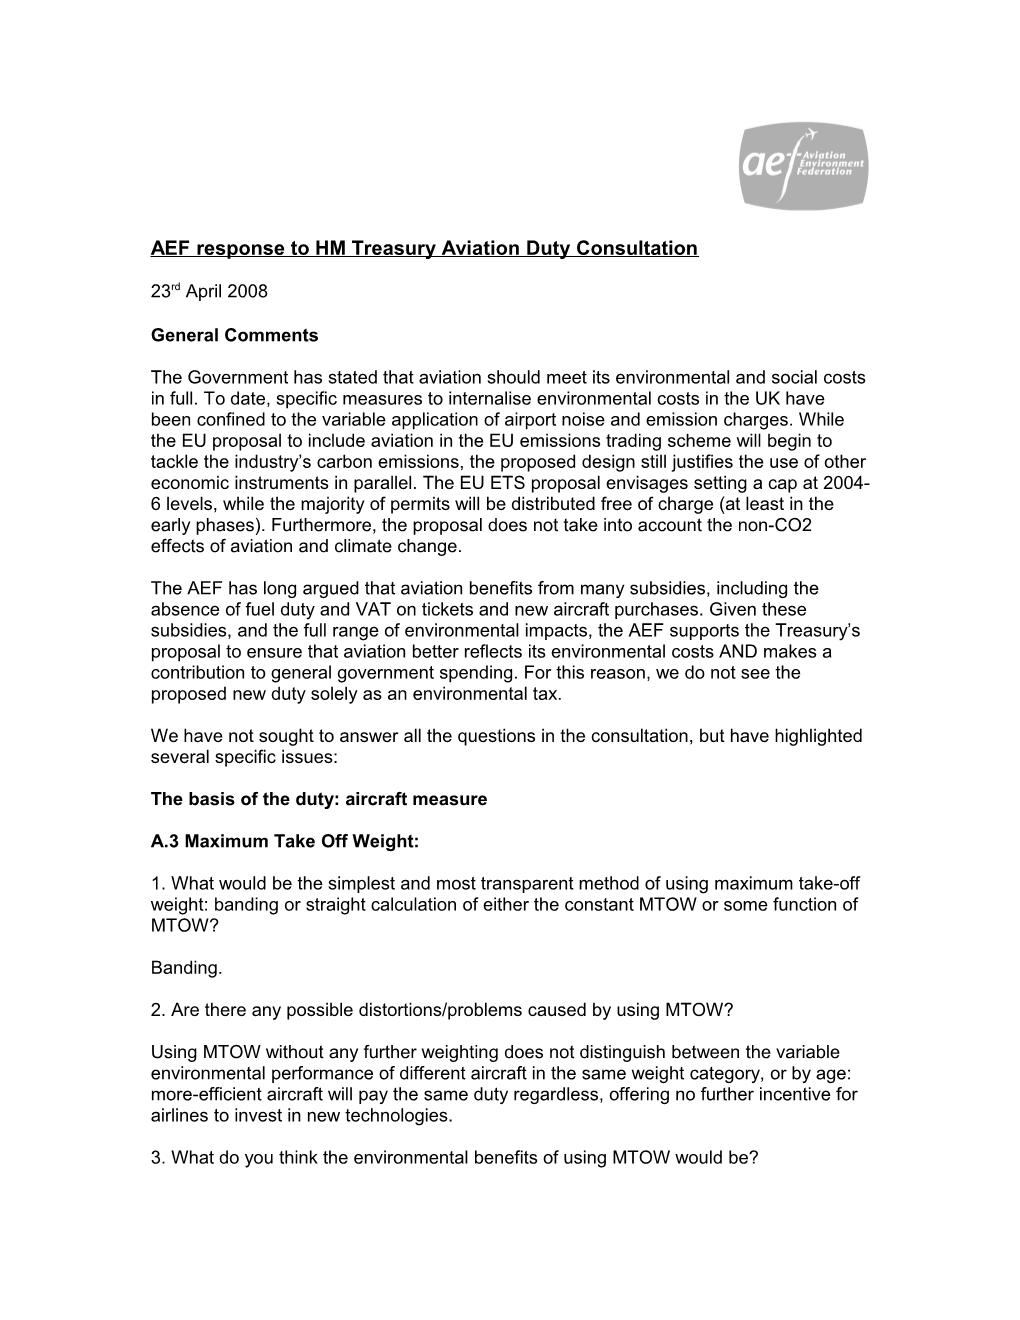 AEF Response to HM Treasury Aviation Duty Consultation